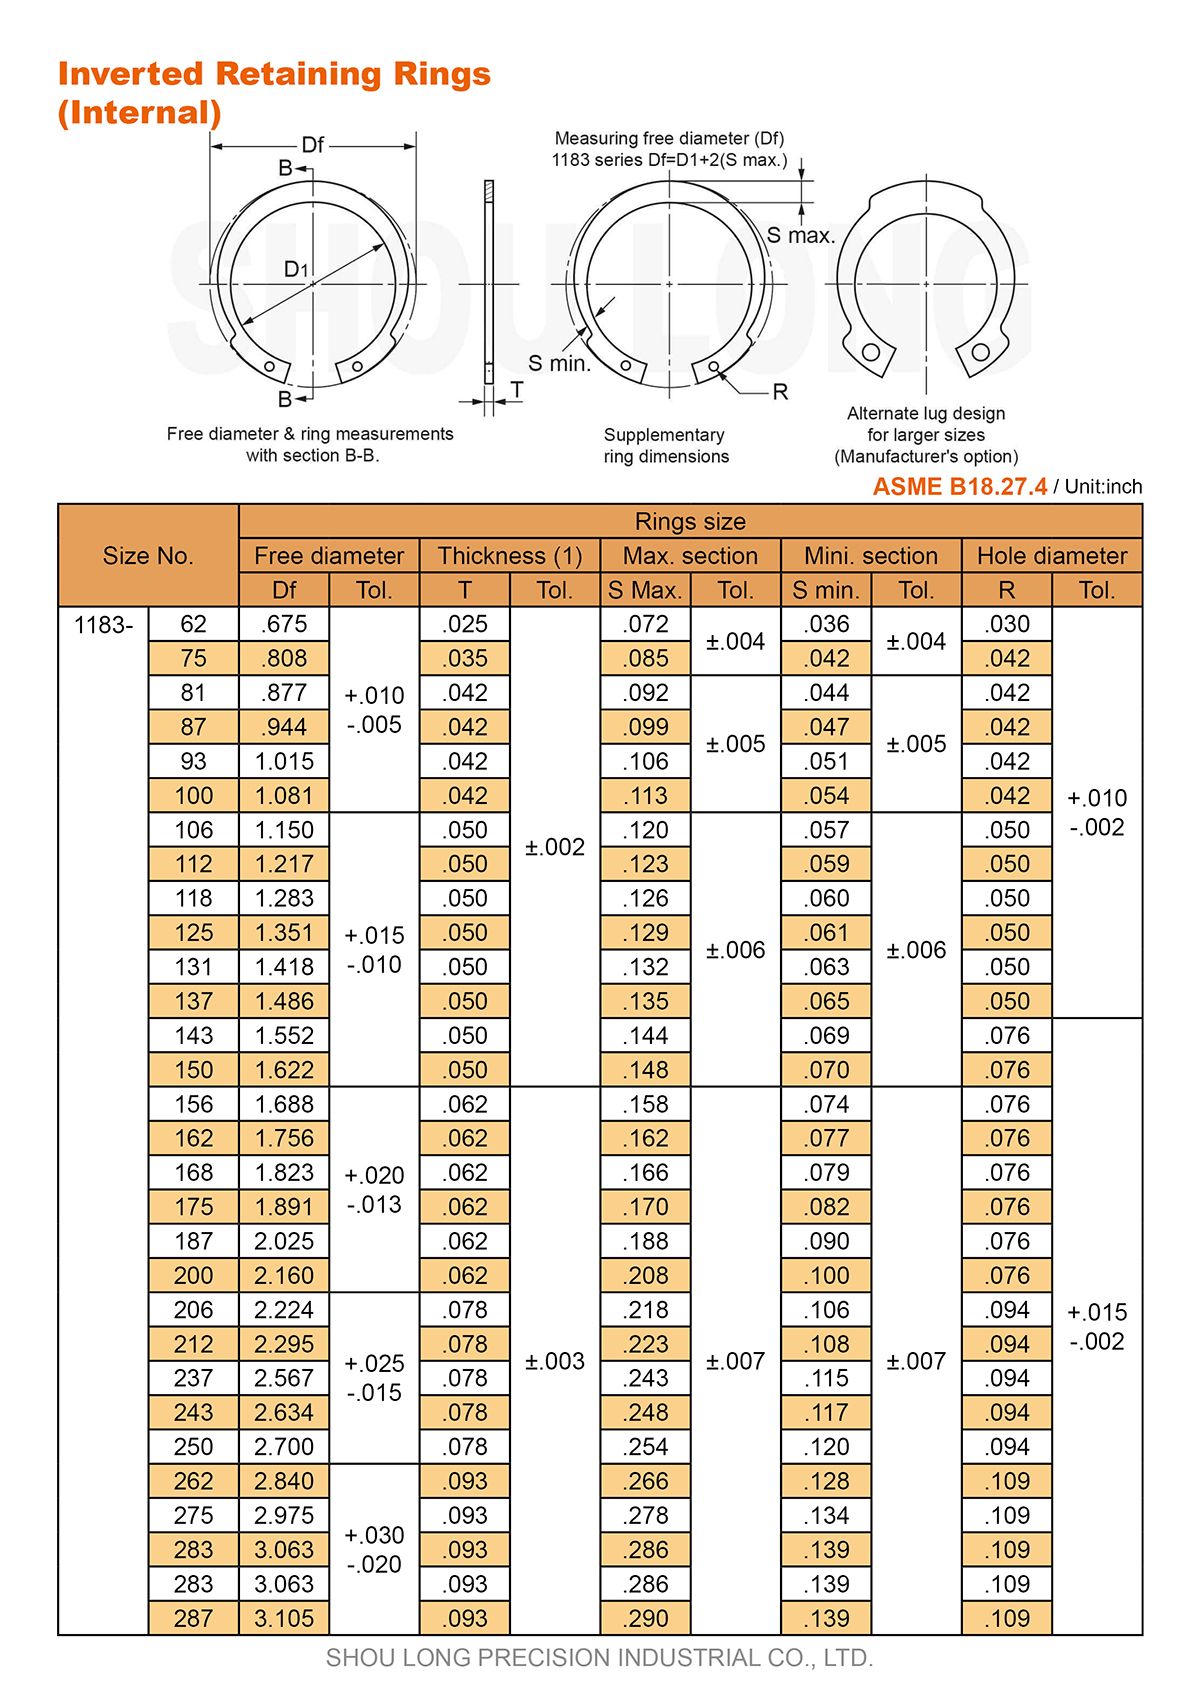 Spesifikasi Cincin Penahan Terbalik Inch untuk Lubang ASME/ANSI B18.27.4 - 1